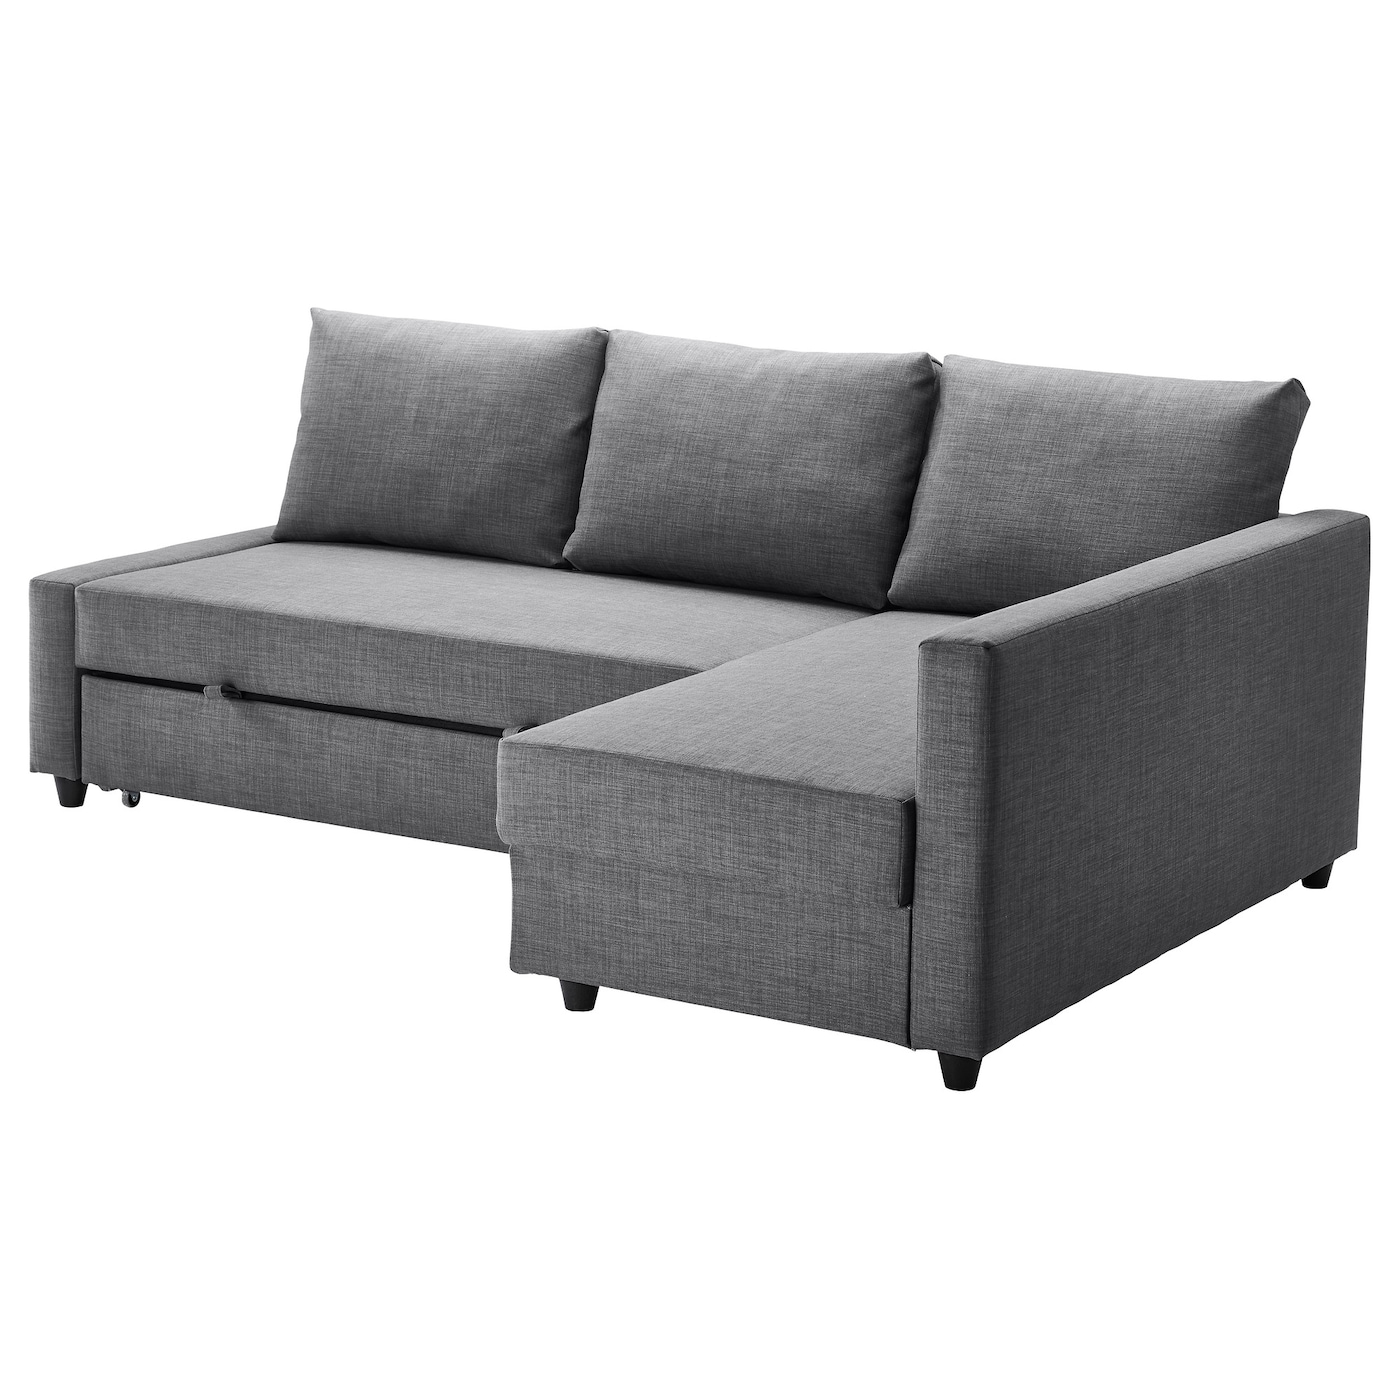 ФРИХЕТЭН Диван-кровать угловой + место для хранения, Скифтебо темно-серый FRIHETEN IKEA диван кровать шарм дизайн уют 2 серый